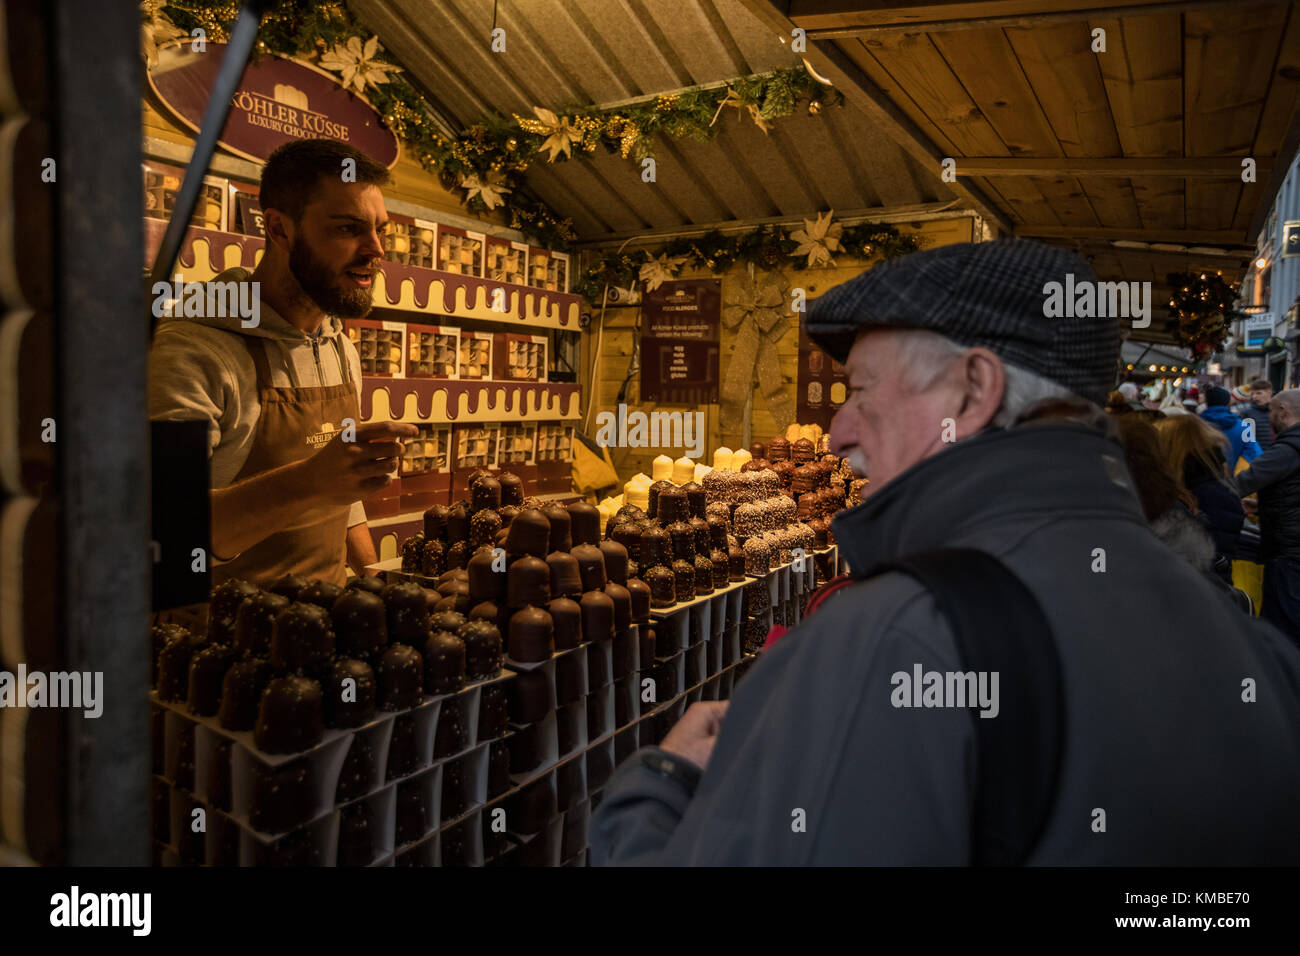 Trabajador de calado en el mercado que sirven comida en Manchester los mercados de Navidad alrededor de la ciudad, Manchester, Inglaterra, Reino Unido. Foto de stock